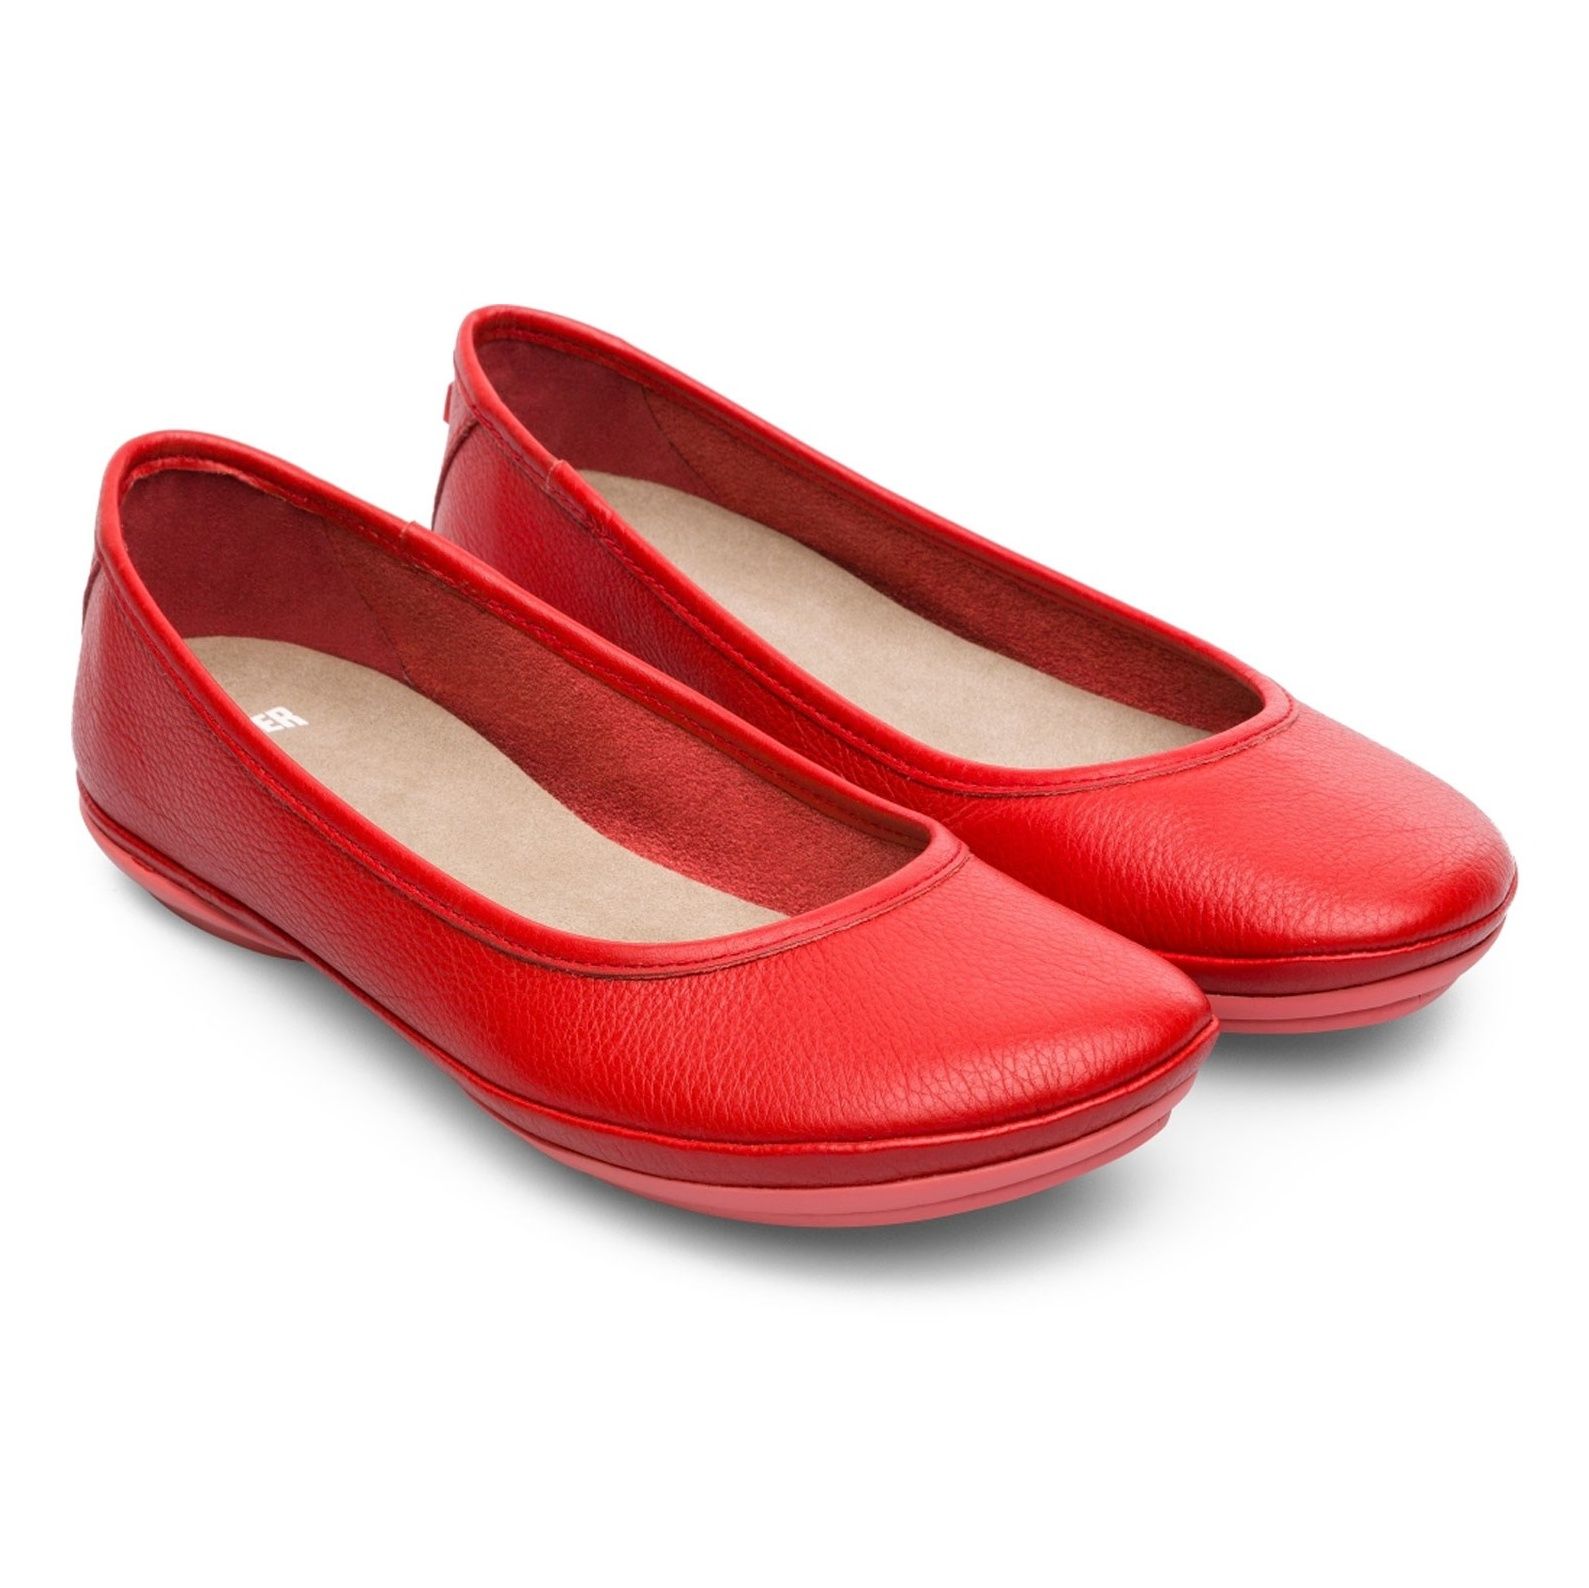 کفش تخت چرم زنانه Right Nina - کمپر - قرمز - 6